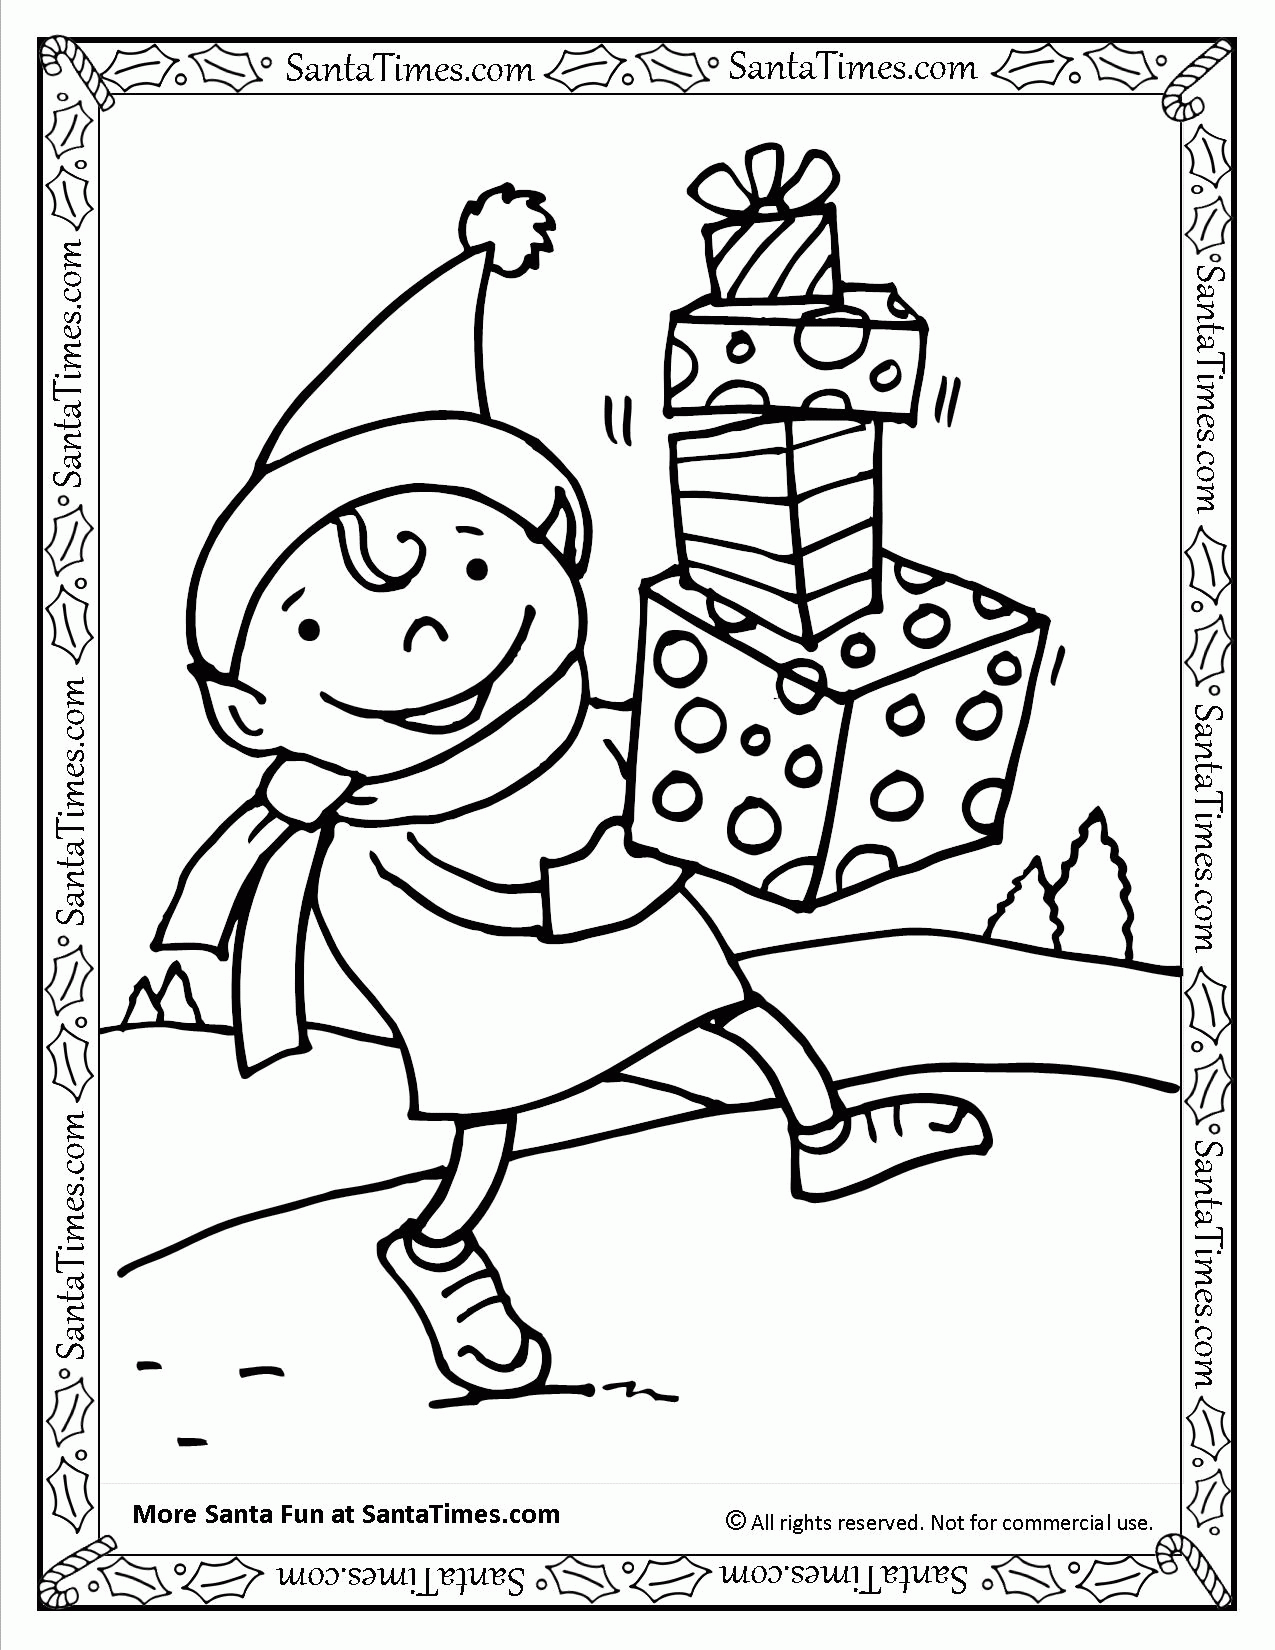 Santa's Elf Printable Coloring Page